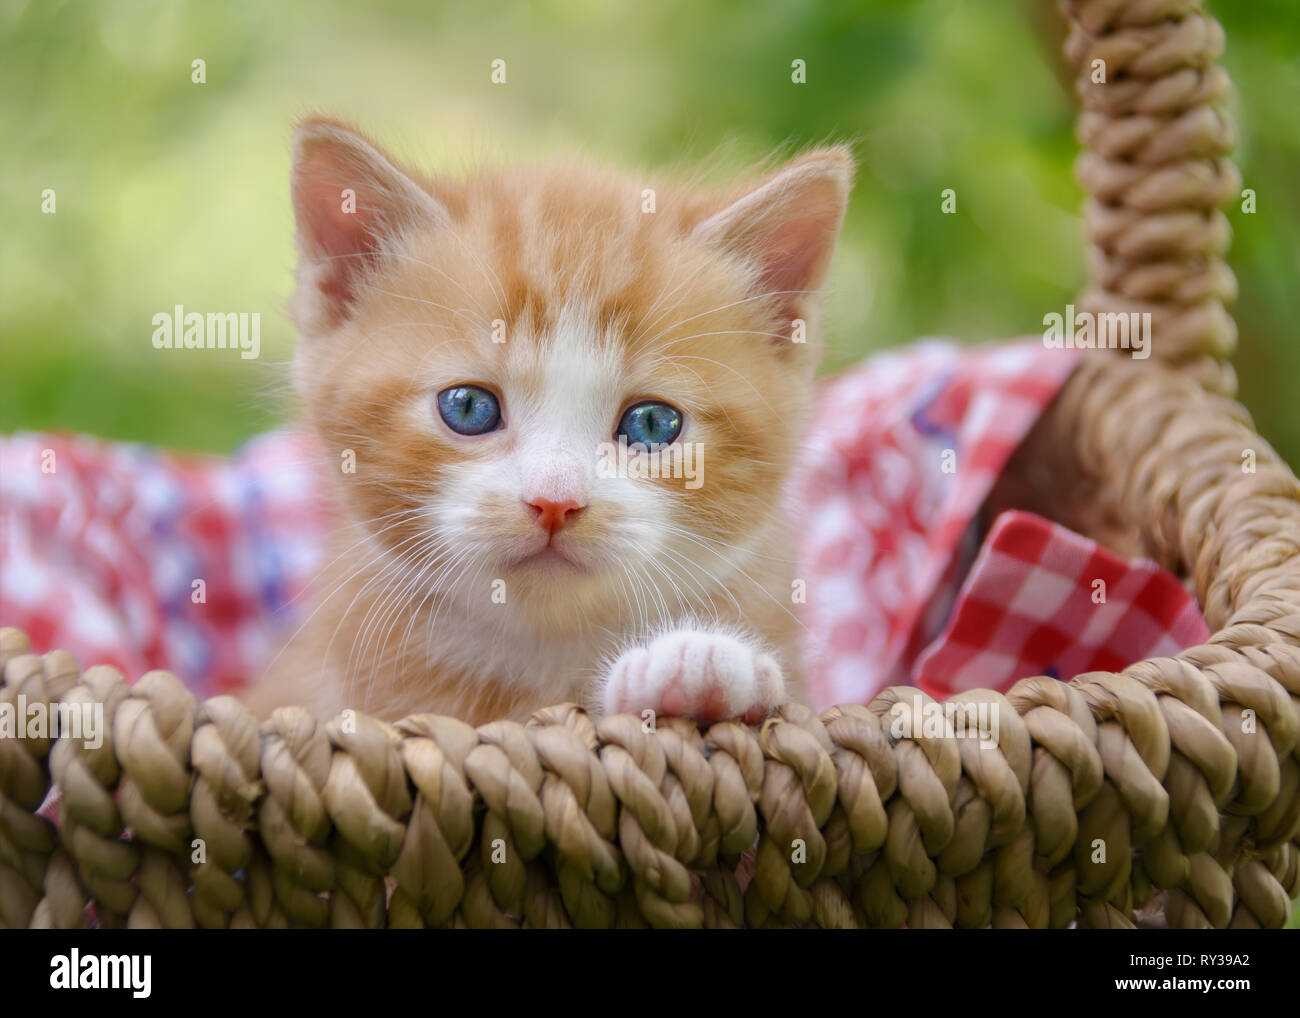 Carino red-tabby-white baby gattino con bellissimi occhi azzurri seduti in un cesto di vimini in un giardino e guardando curiosamente Foto Stock